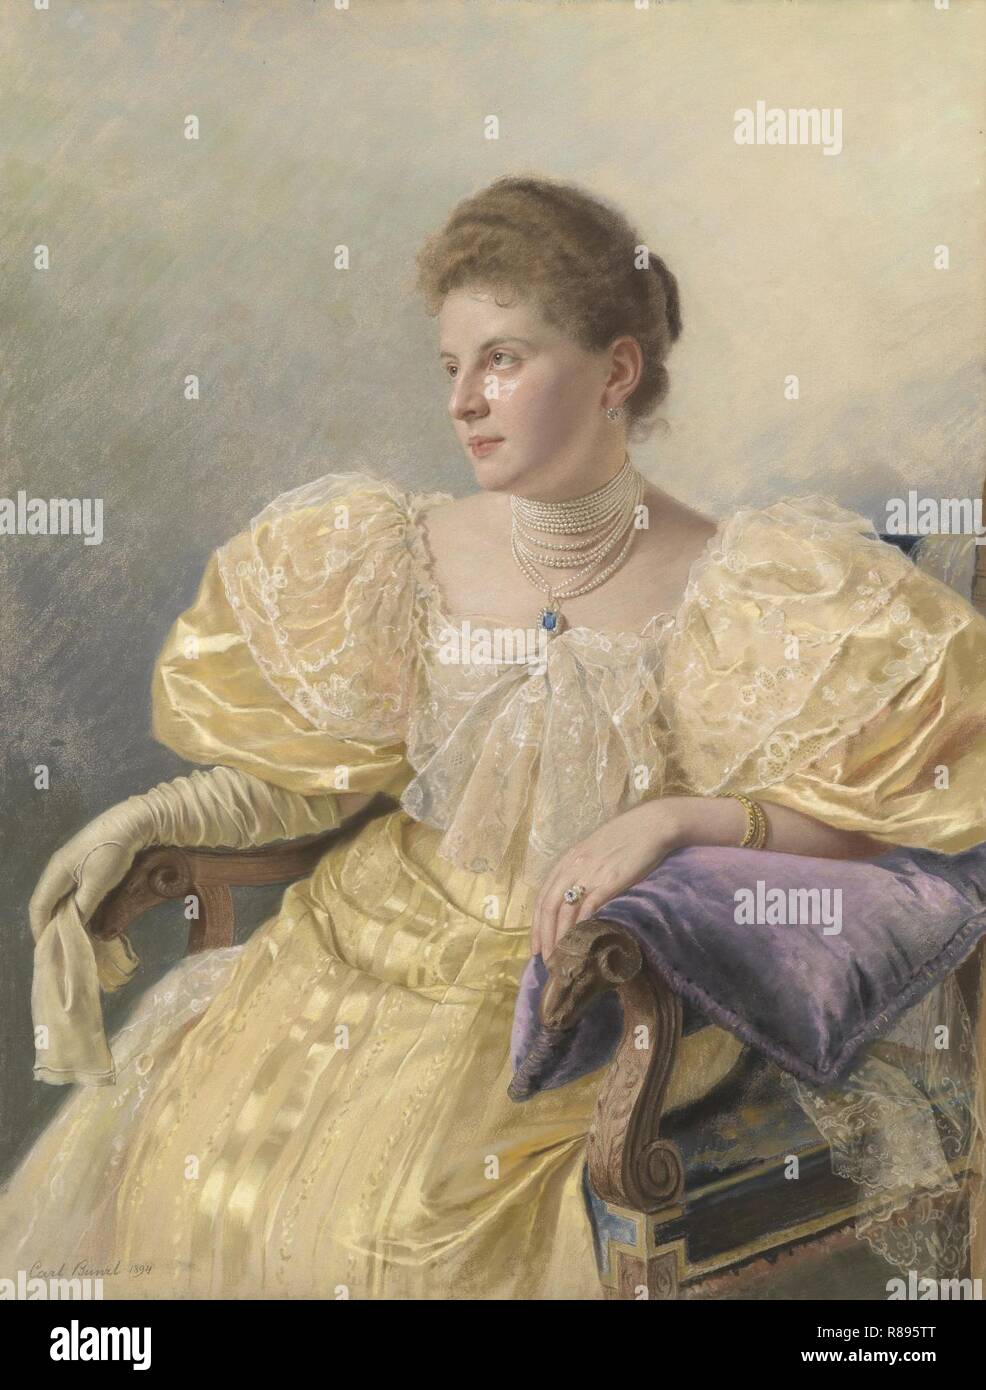 Carl Bunzl Porträt einer eleganten Dame in gelbem Kleid 1894. Stock Photo